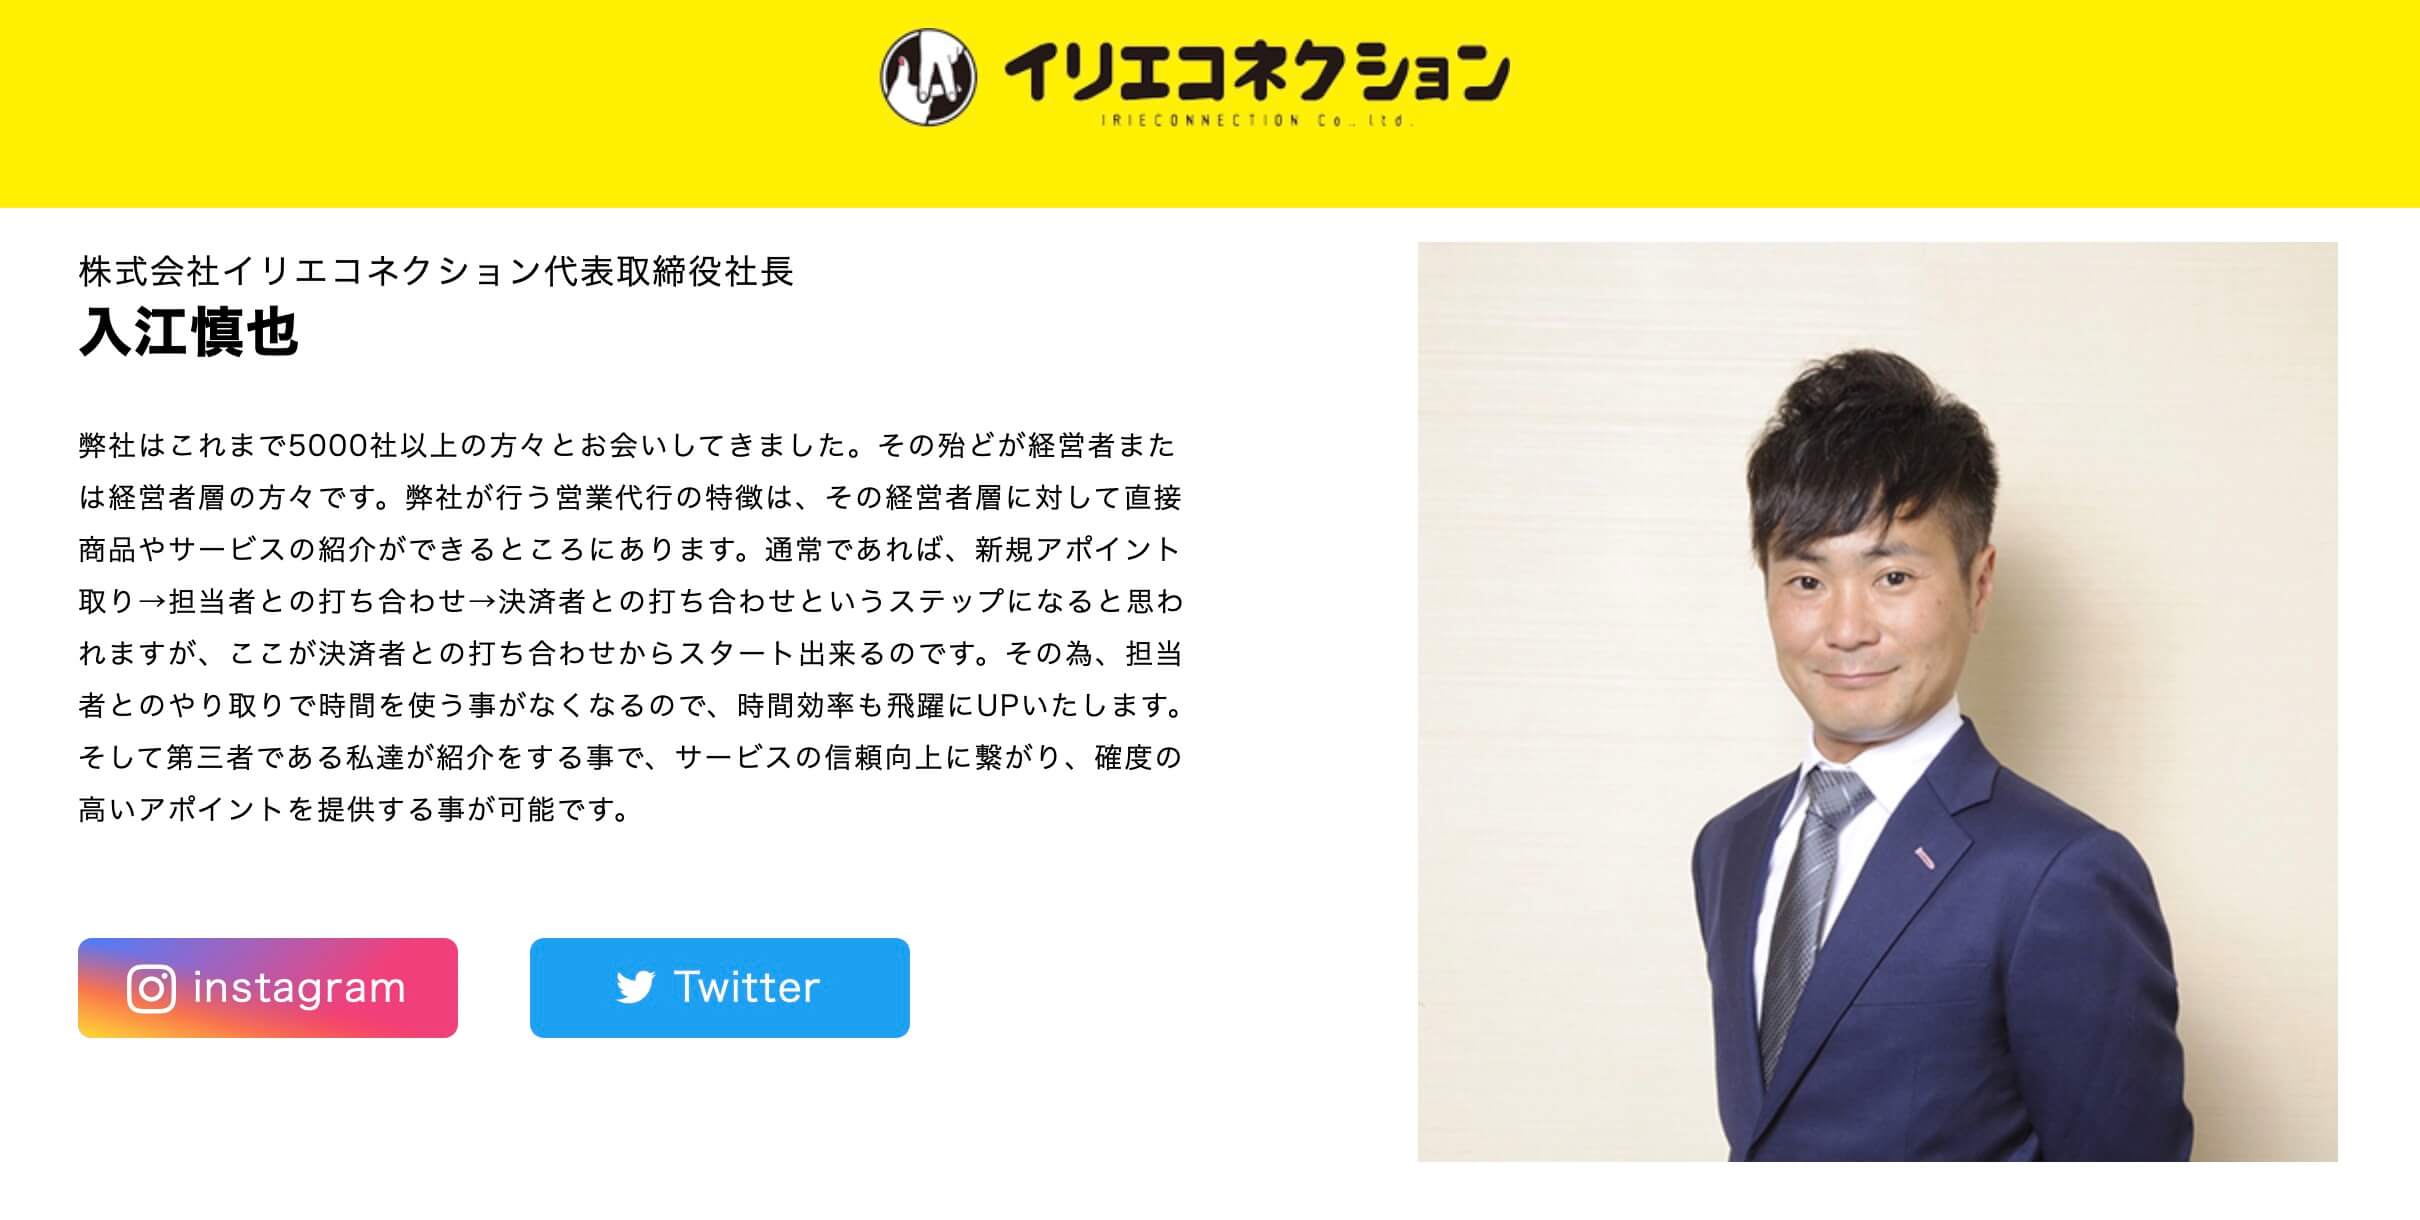 カラテカ入江が社長を務める会社のホームページ